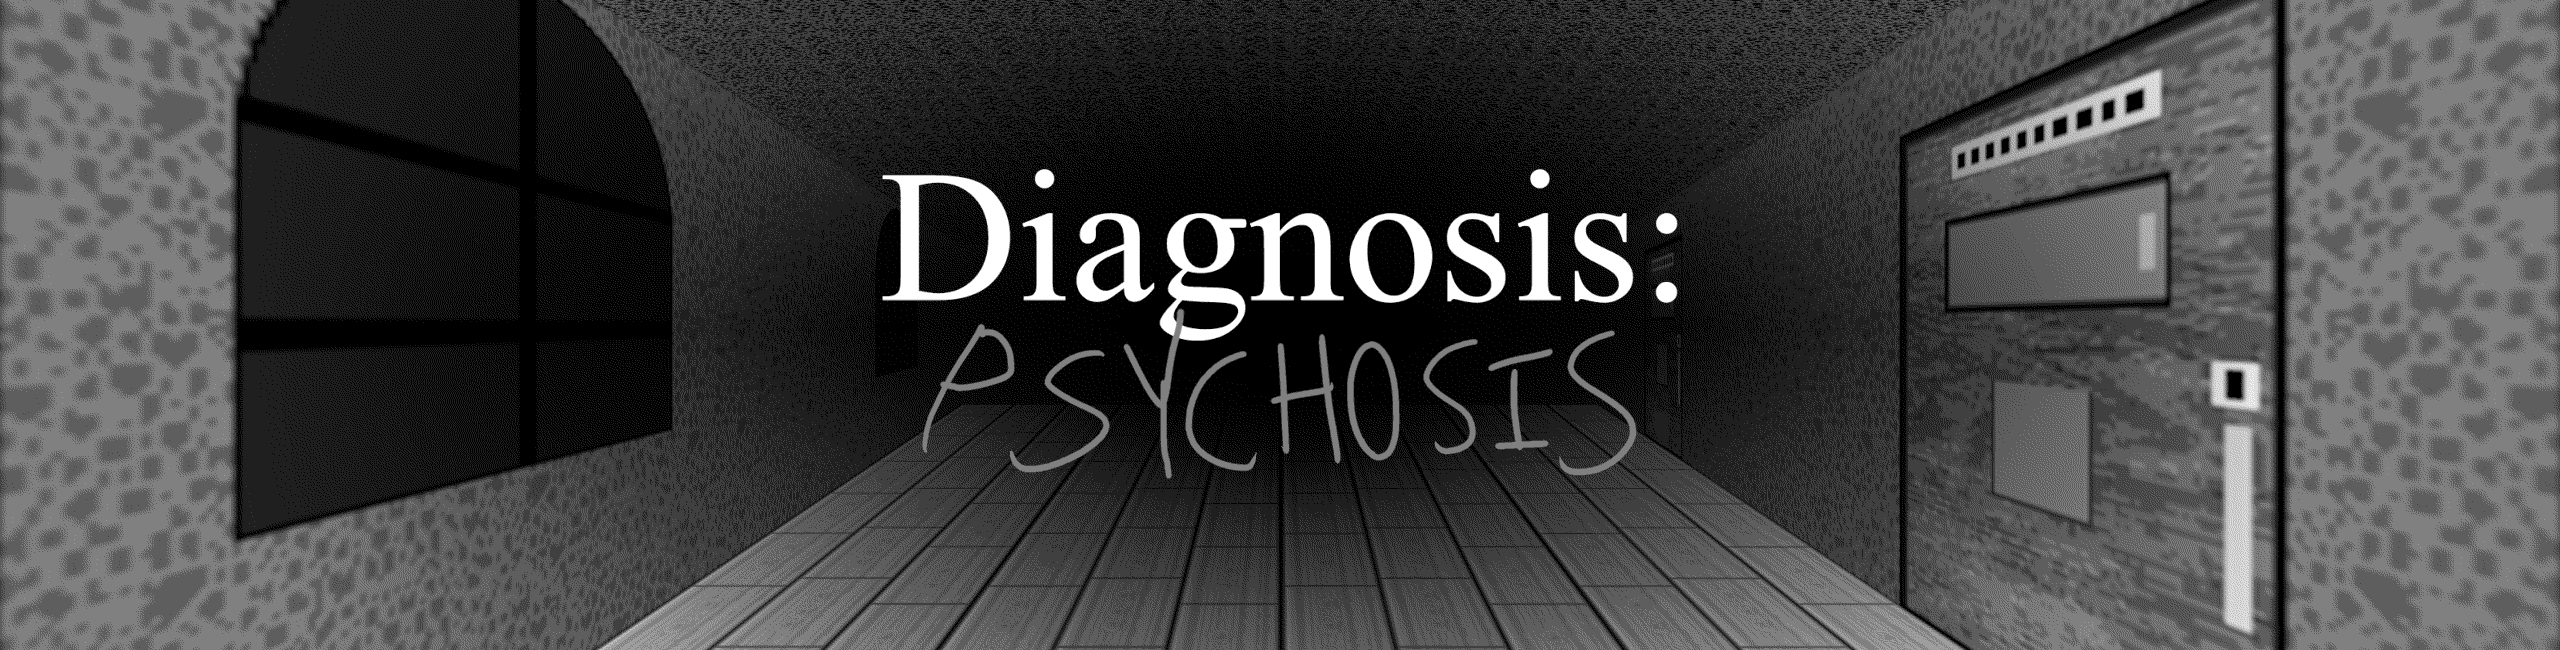 Diagnosis Psychous